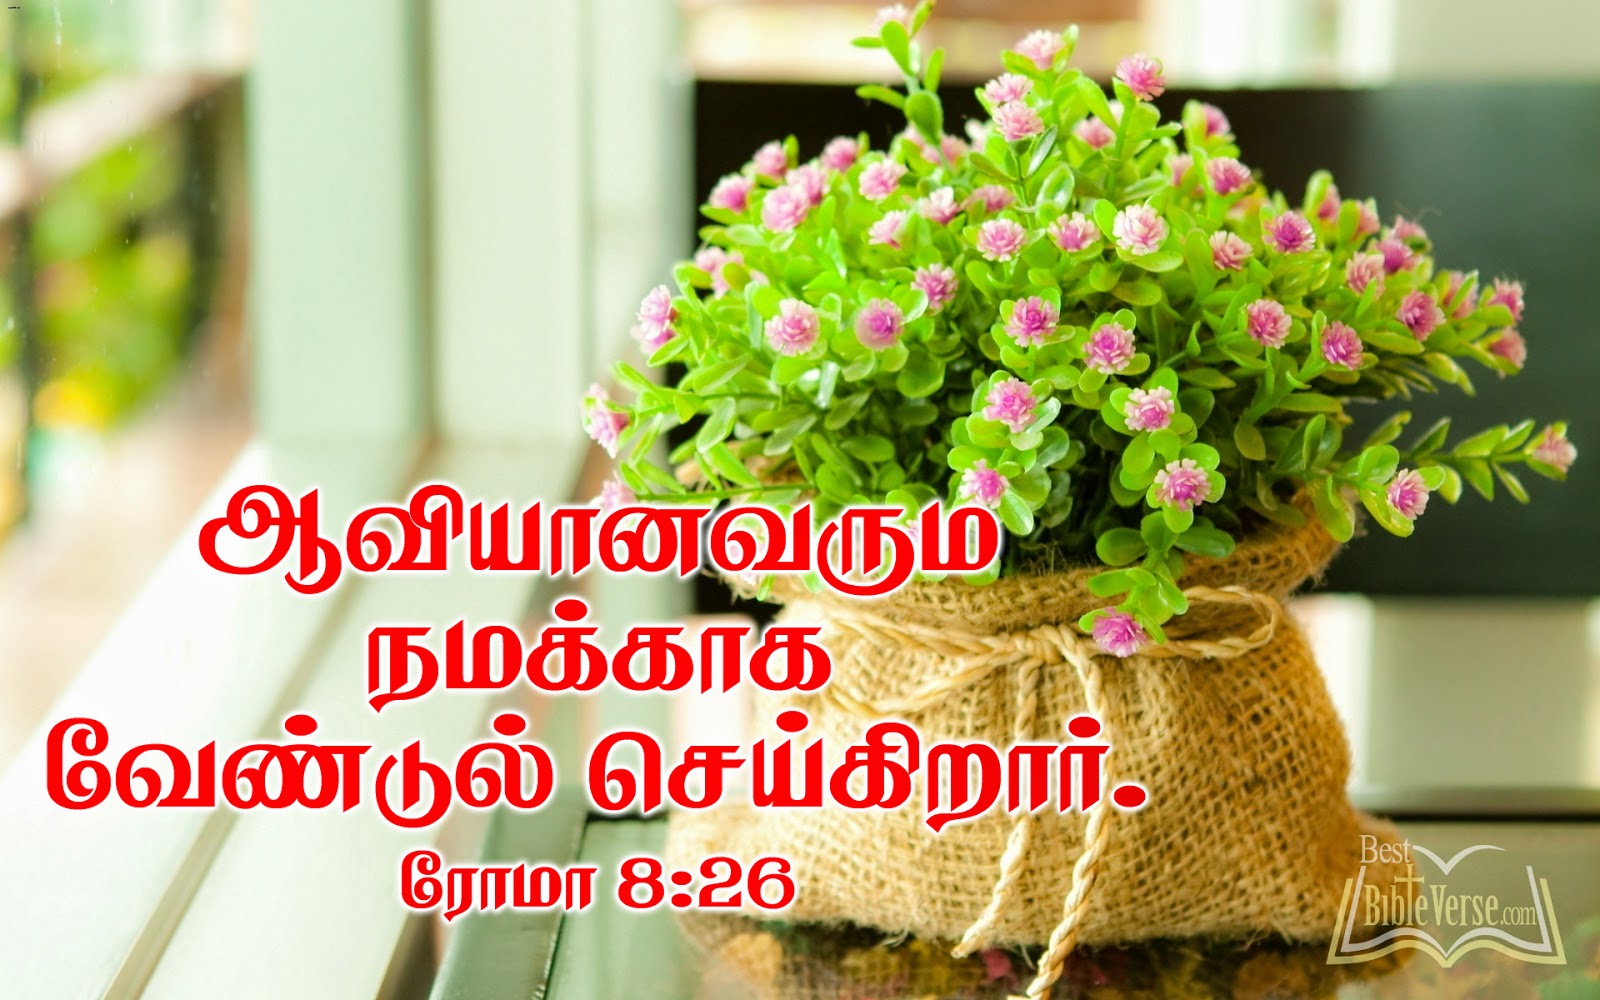 kannada bible words wallpaper,flowerpot,flower,plant,bouquet,houseplant